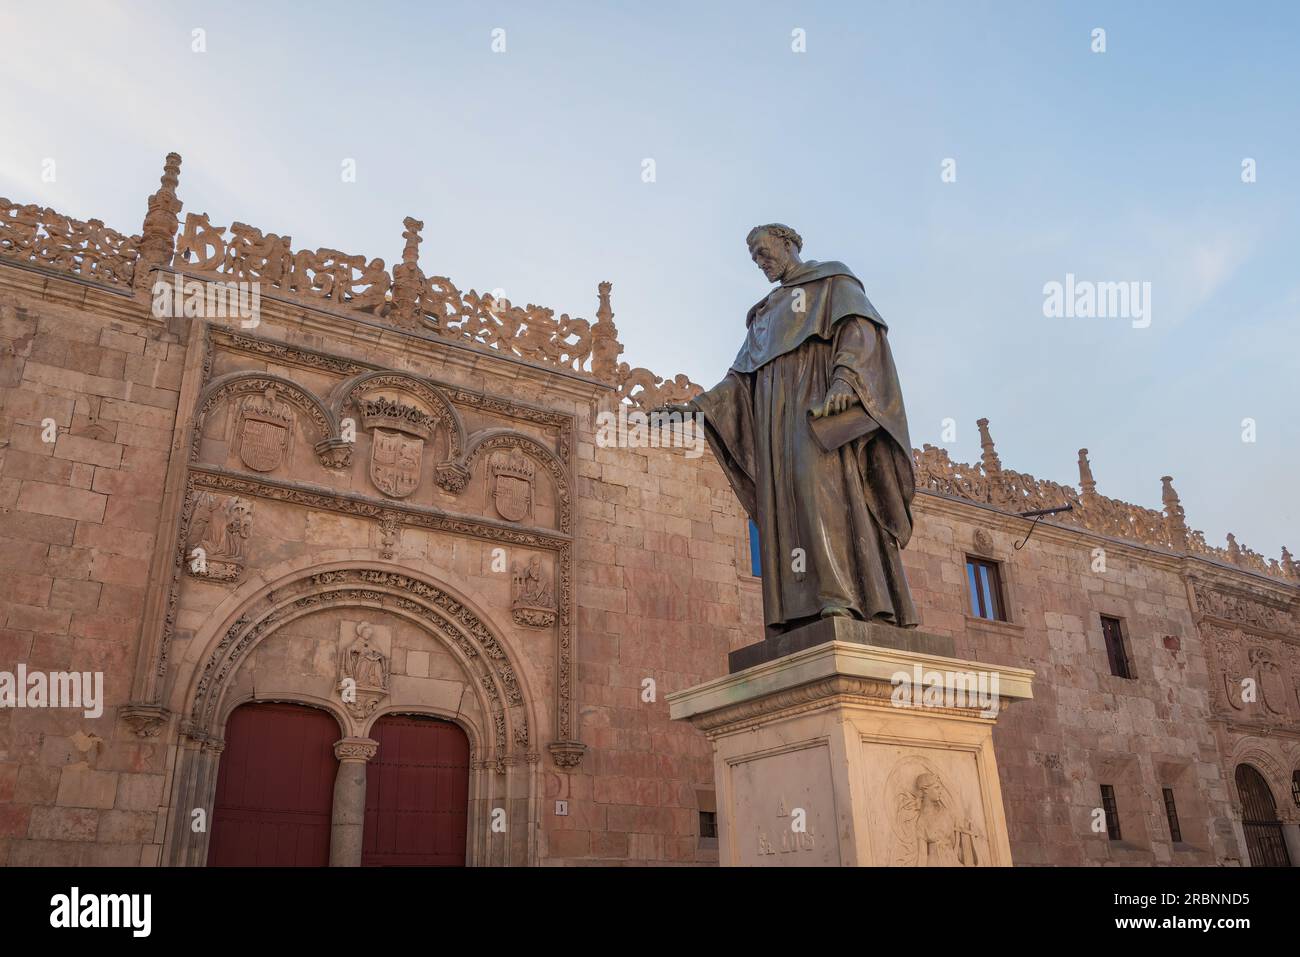 Statua di Fray Luis de Leon di fronte all'edificio della vecchia Università di Salamanca - Salamanca, Spagna Foto Stock